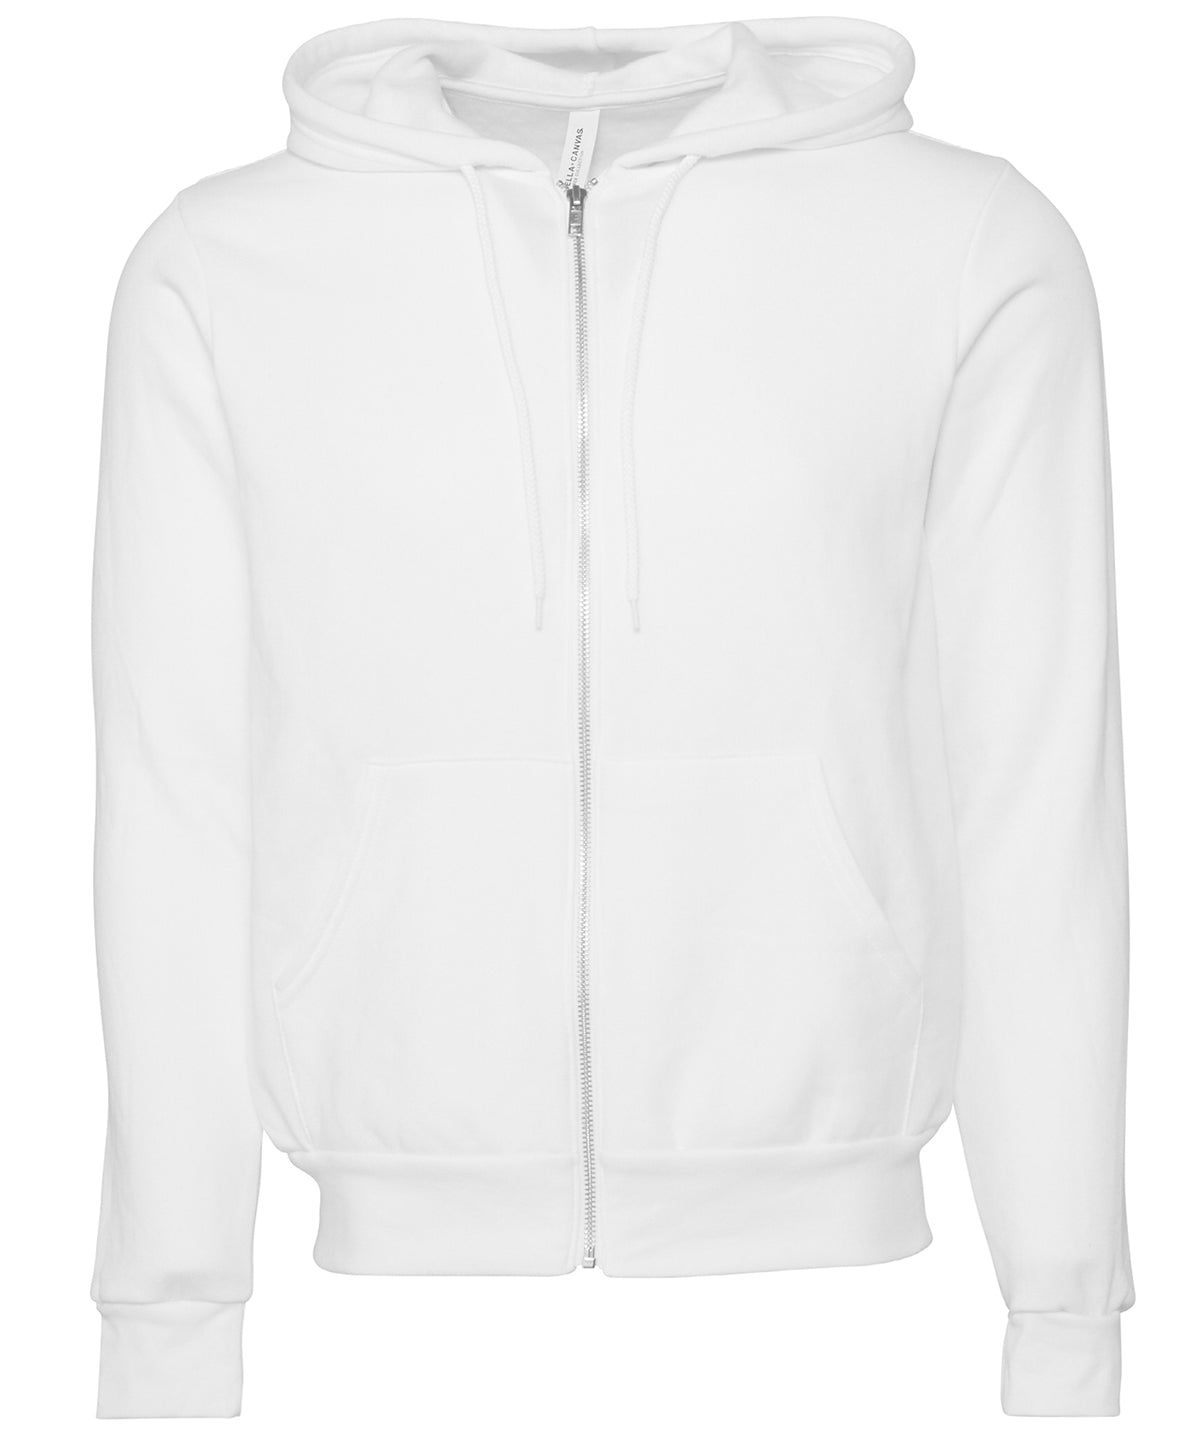 Personalised Hoodies - Dark Grey Bella Canvas Unisex polycotton fleece full-zip hoodie